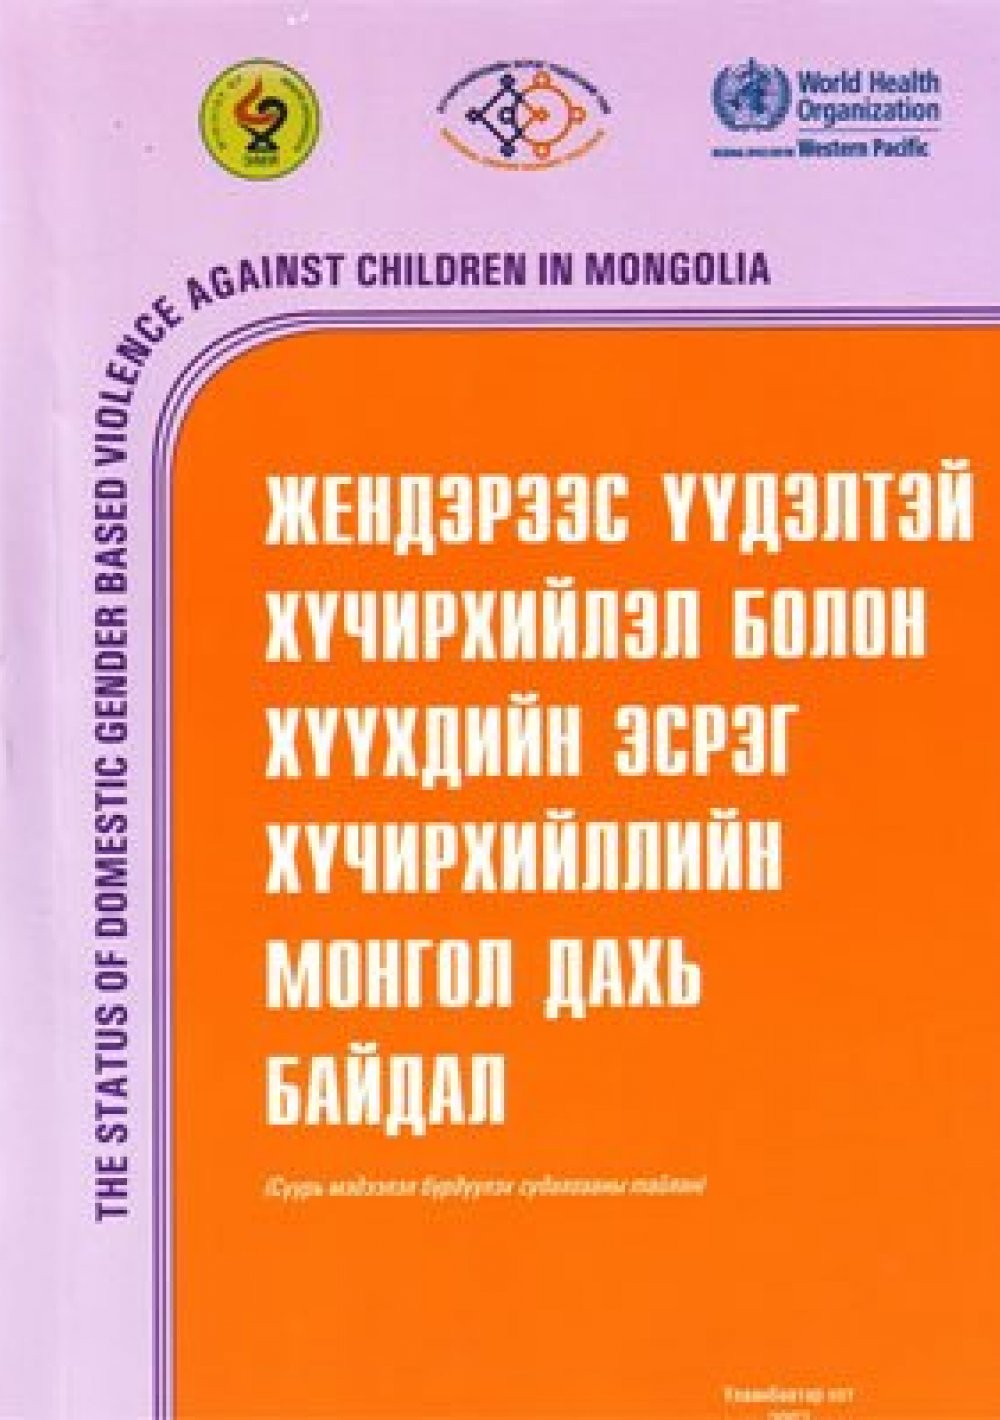 Жендэрээс үүдэлтэй хүчирхийлэл болон хүүхдийн эсрэг хүчирхийллийн Монгол улс дахь байдал: Суурь мэдээлэл бүрдүүлэх судалгааны тайлан